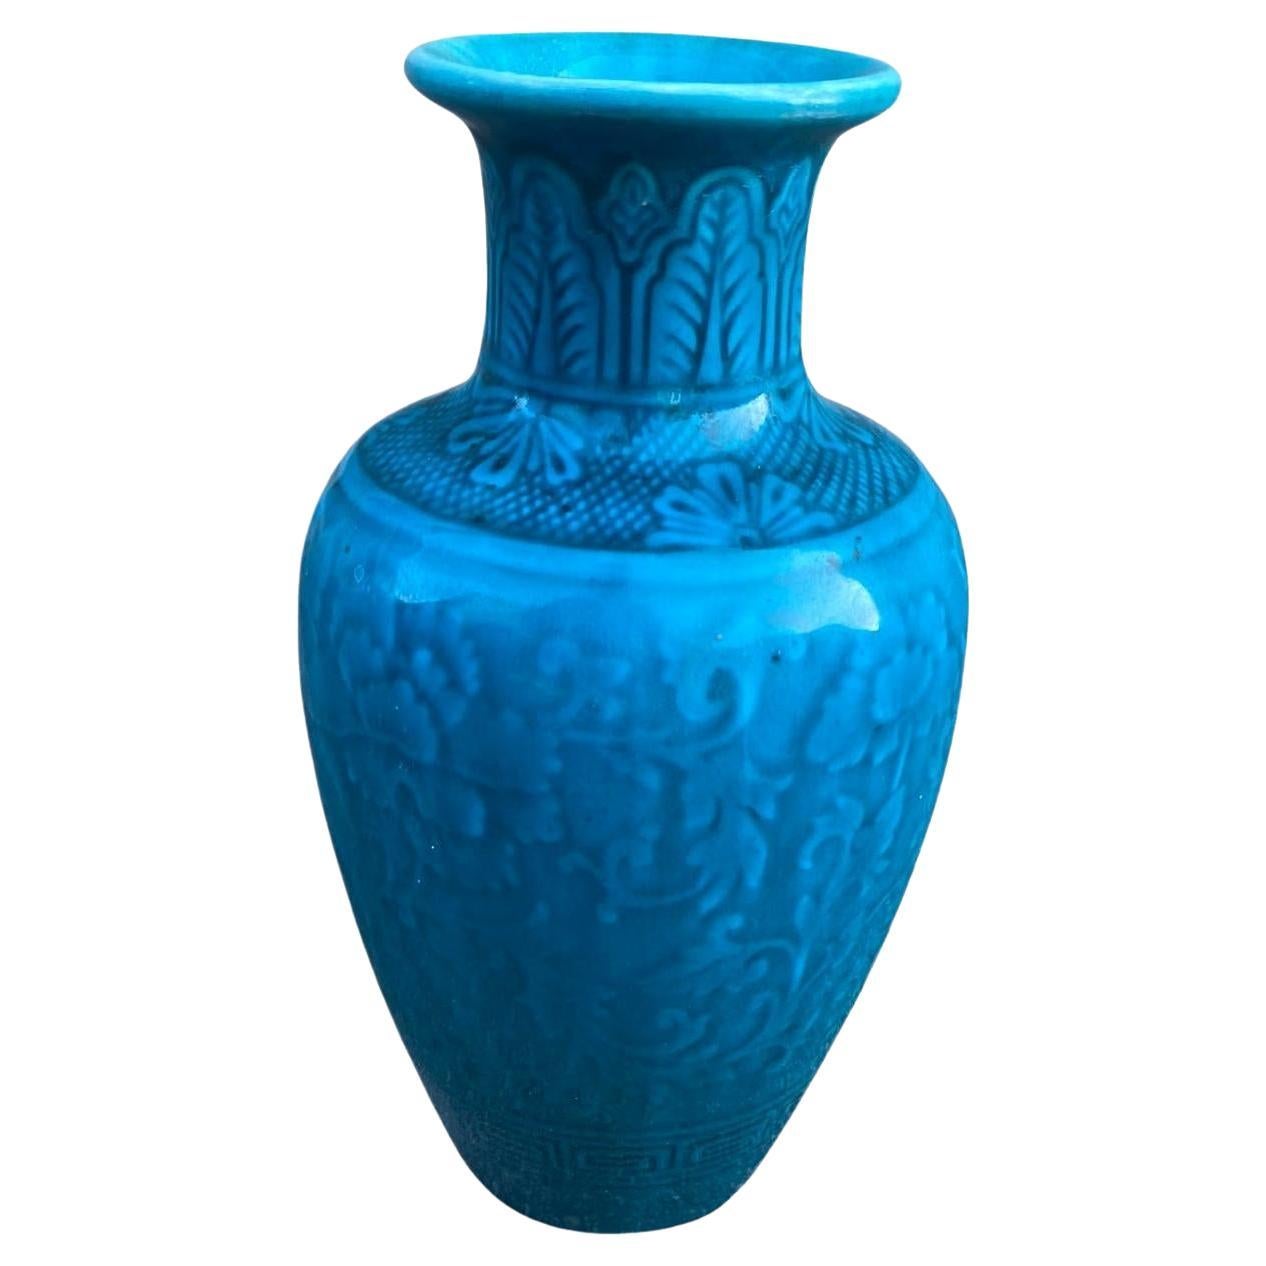 Théodore Deck, Keramische Vase, signiert, um 1870